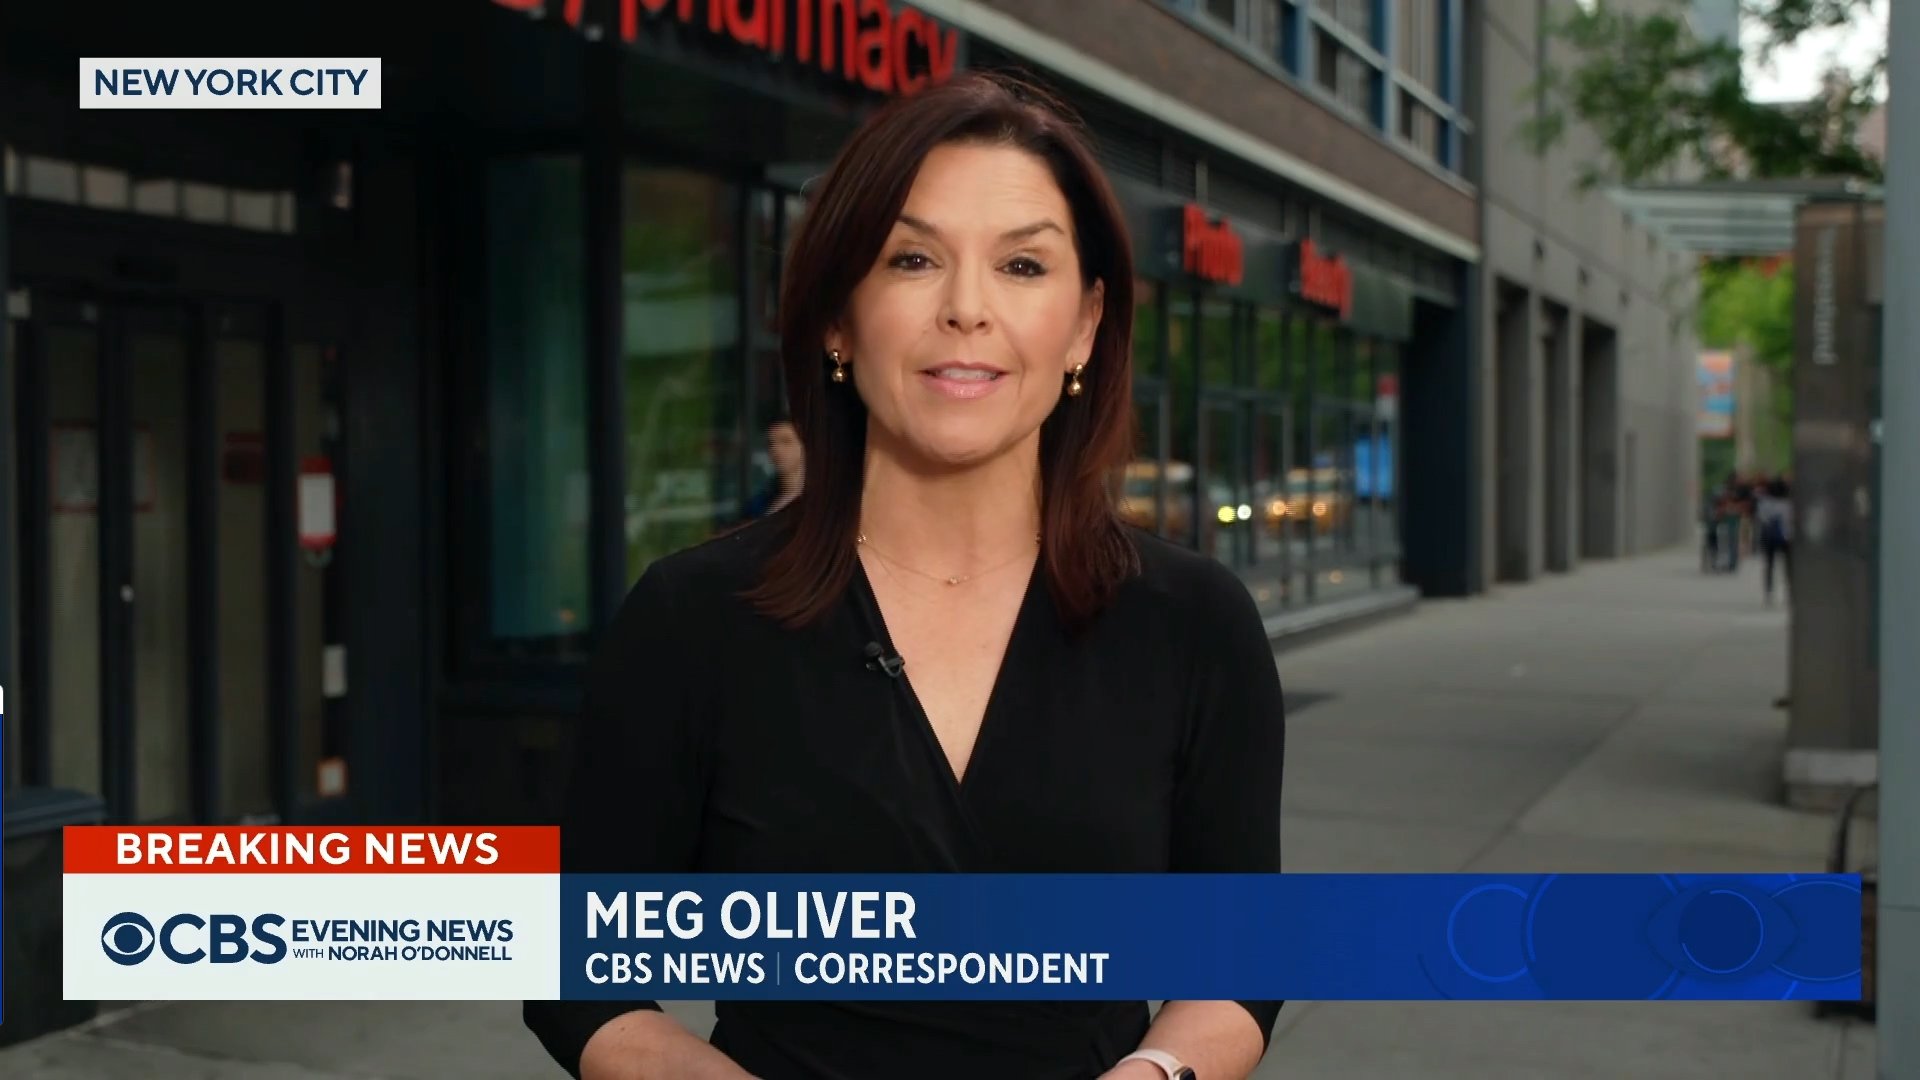 Meg Oliver CBS News